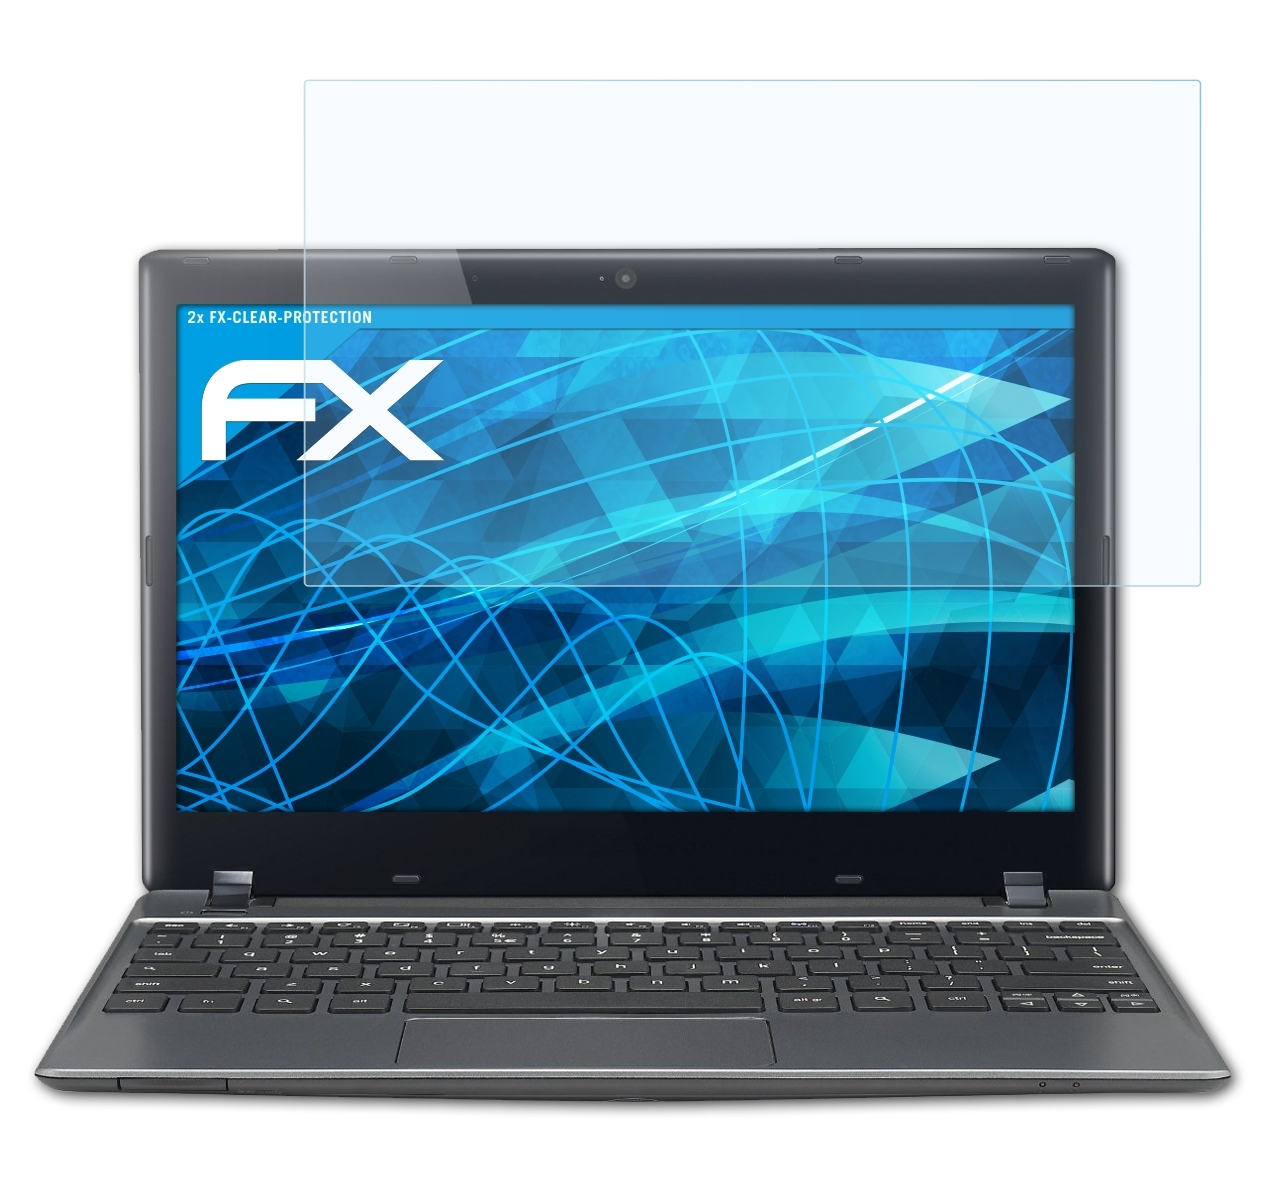 Displayschutz(für Google 2x (C710, C7 (Acer)) Chromebook ATFOLIX FX-Clear 11.6 Inch)